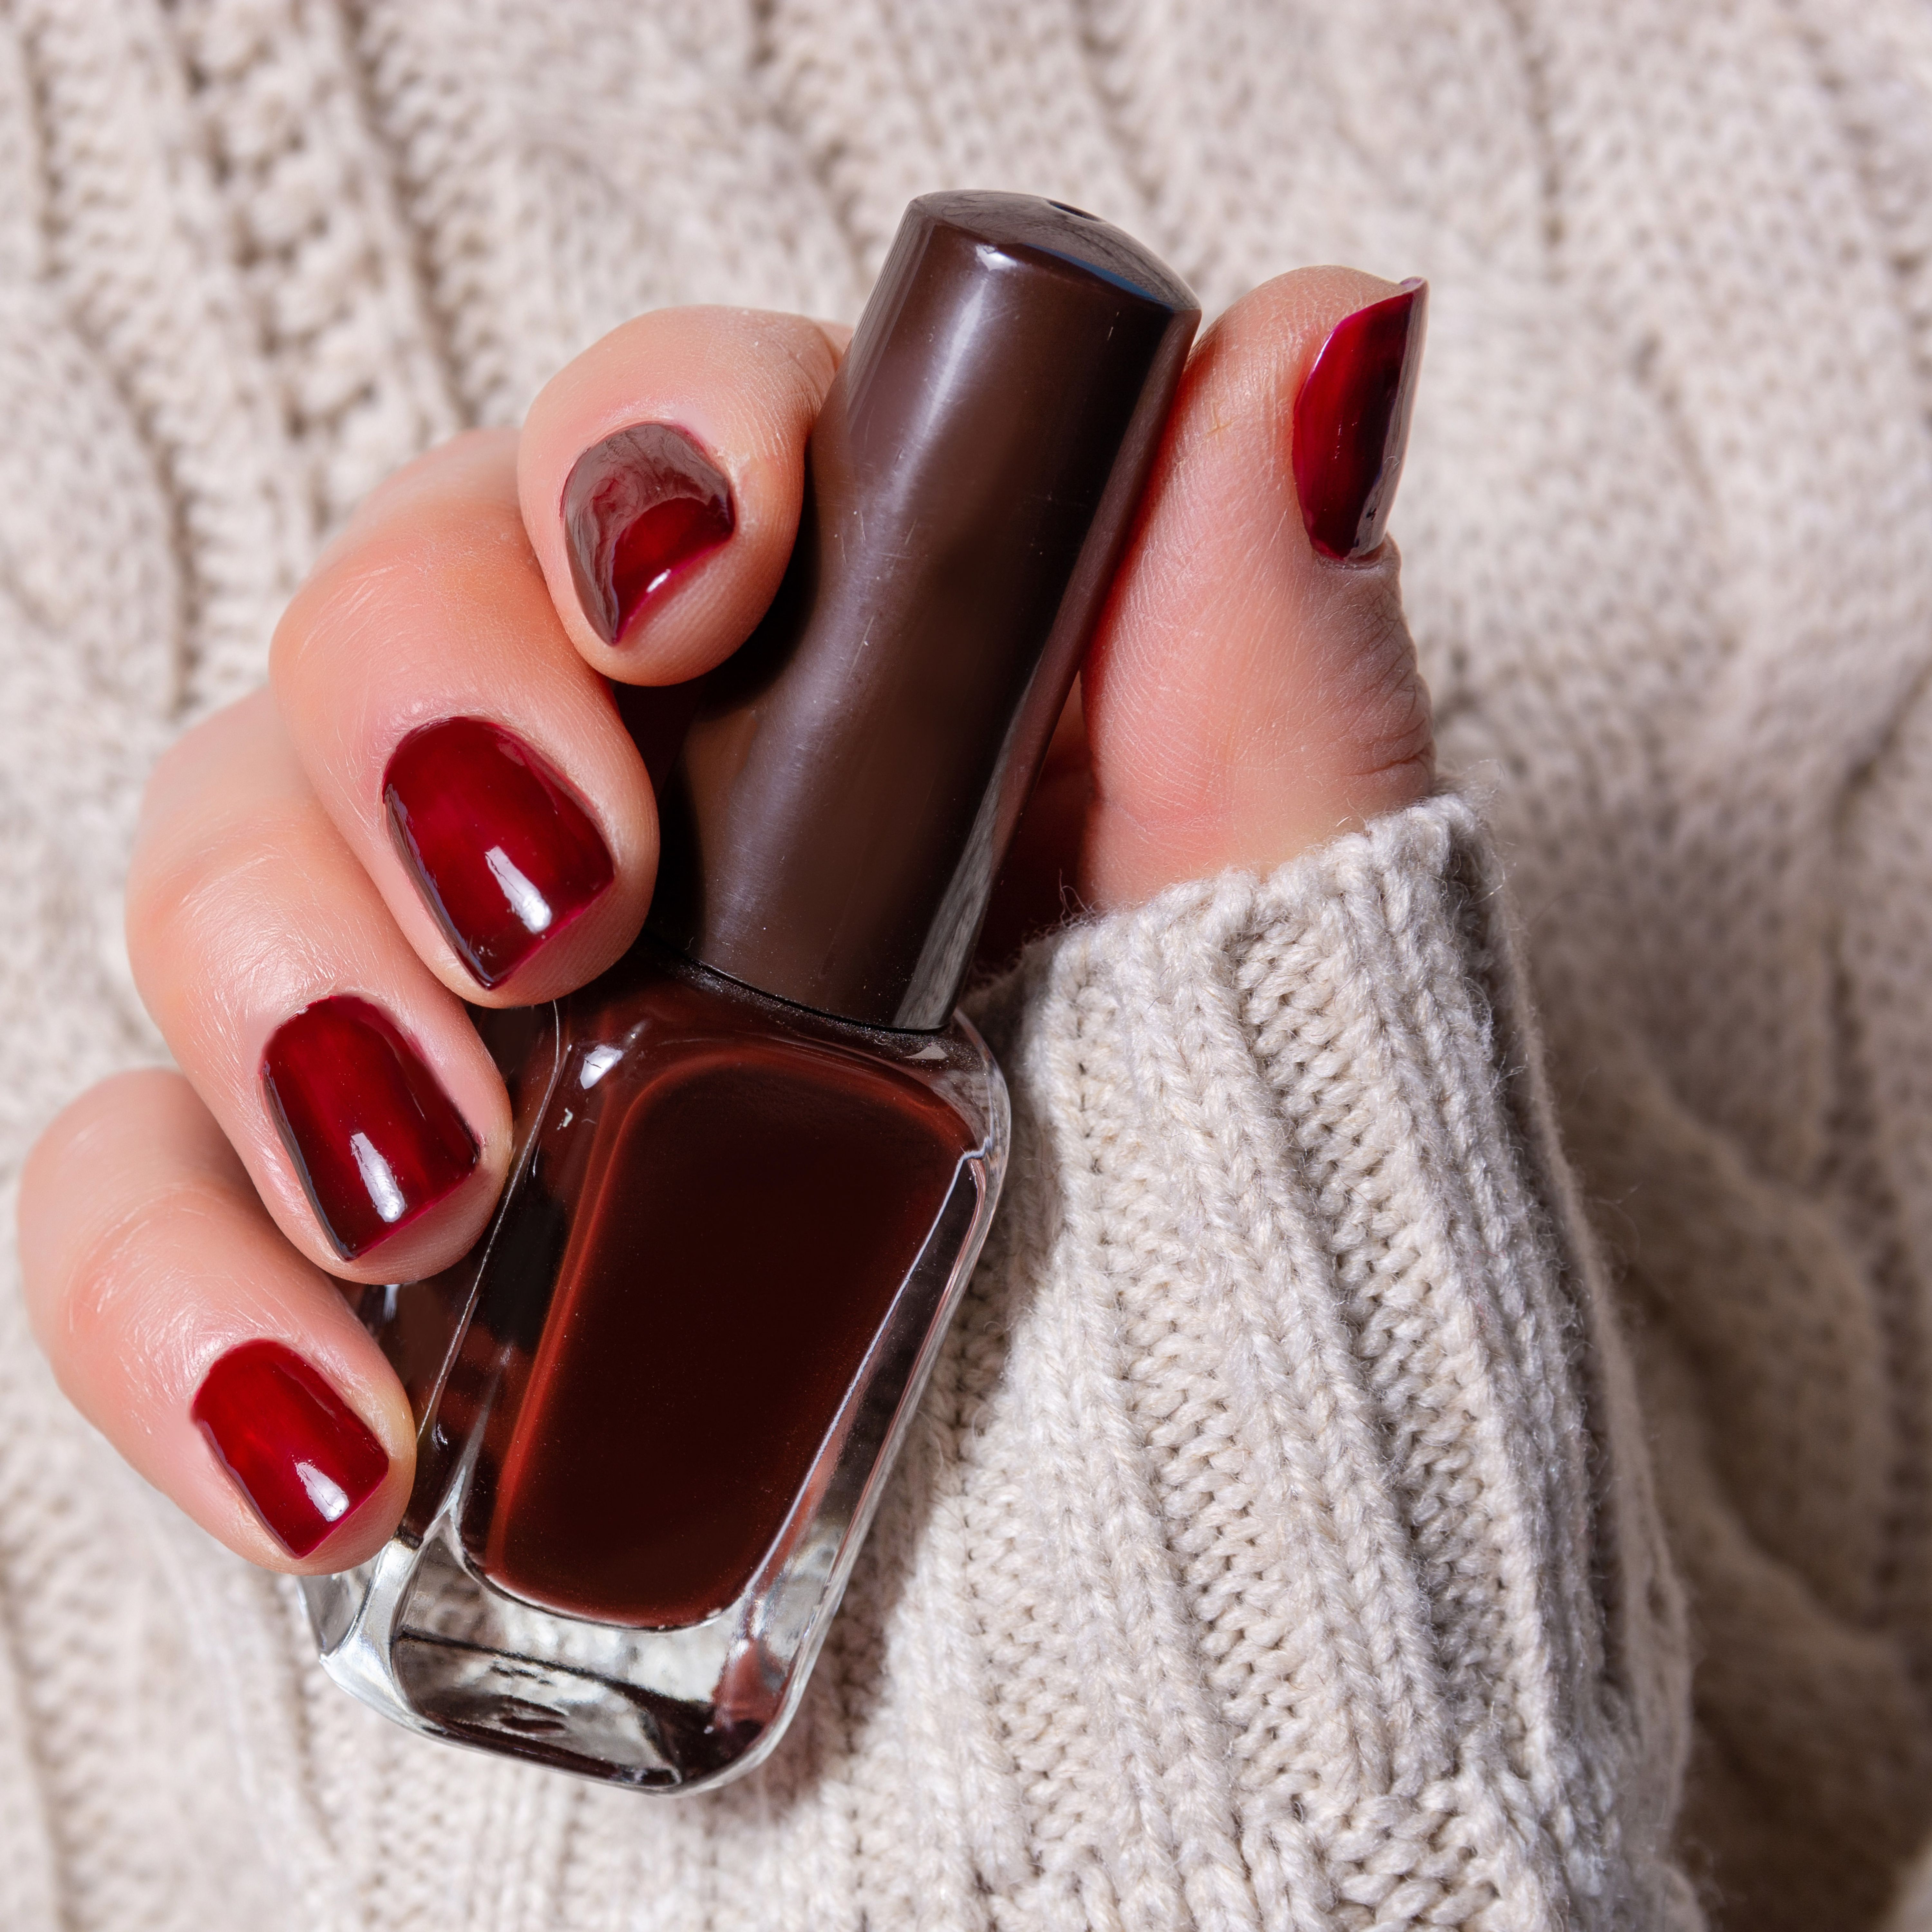 Vernis bordeaux : le vernis à ongles idéal pour l'hiver